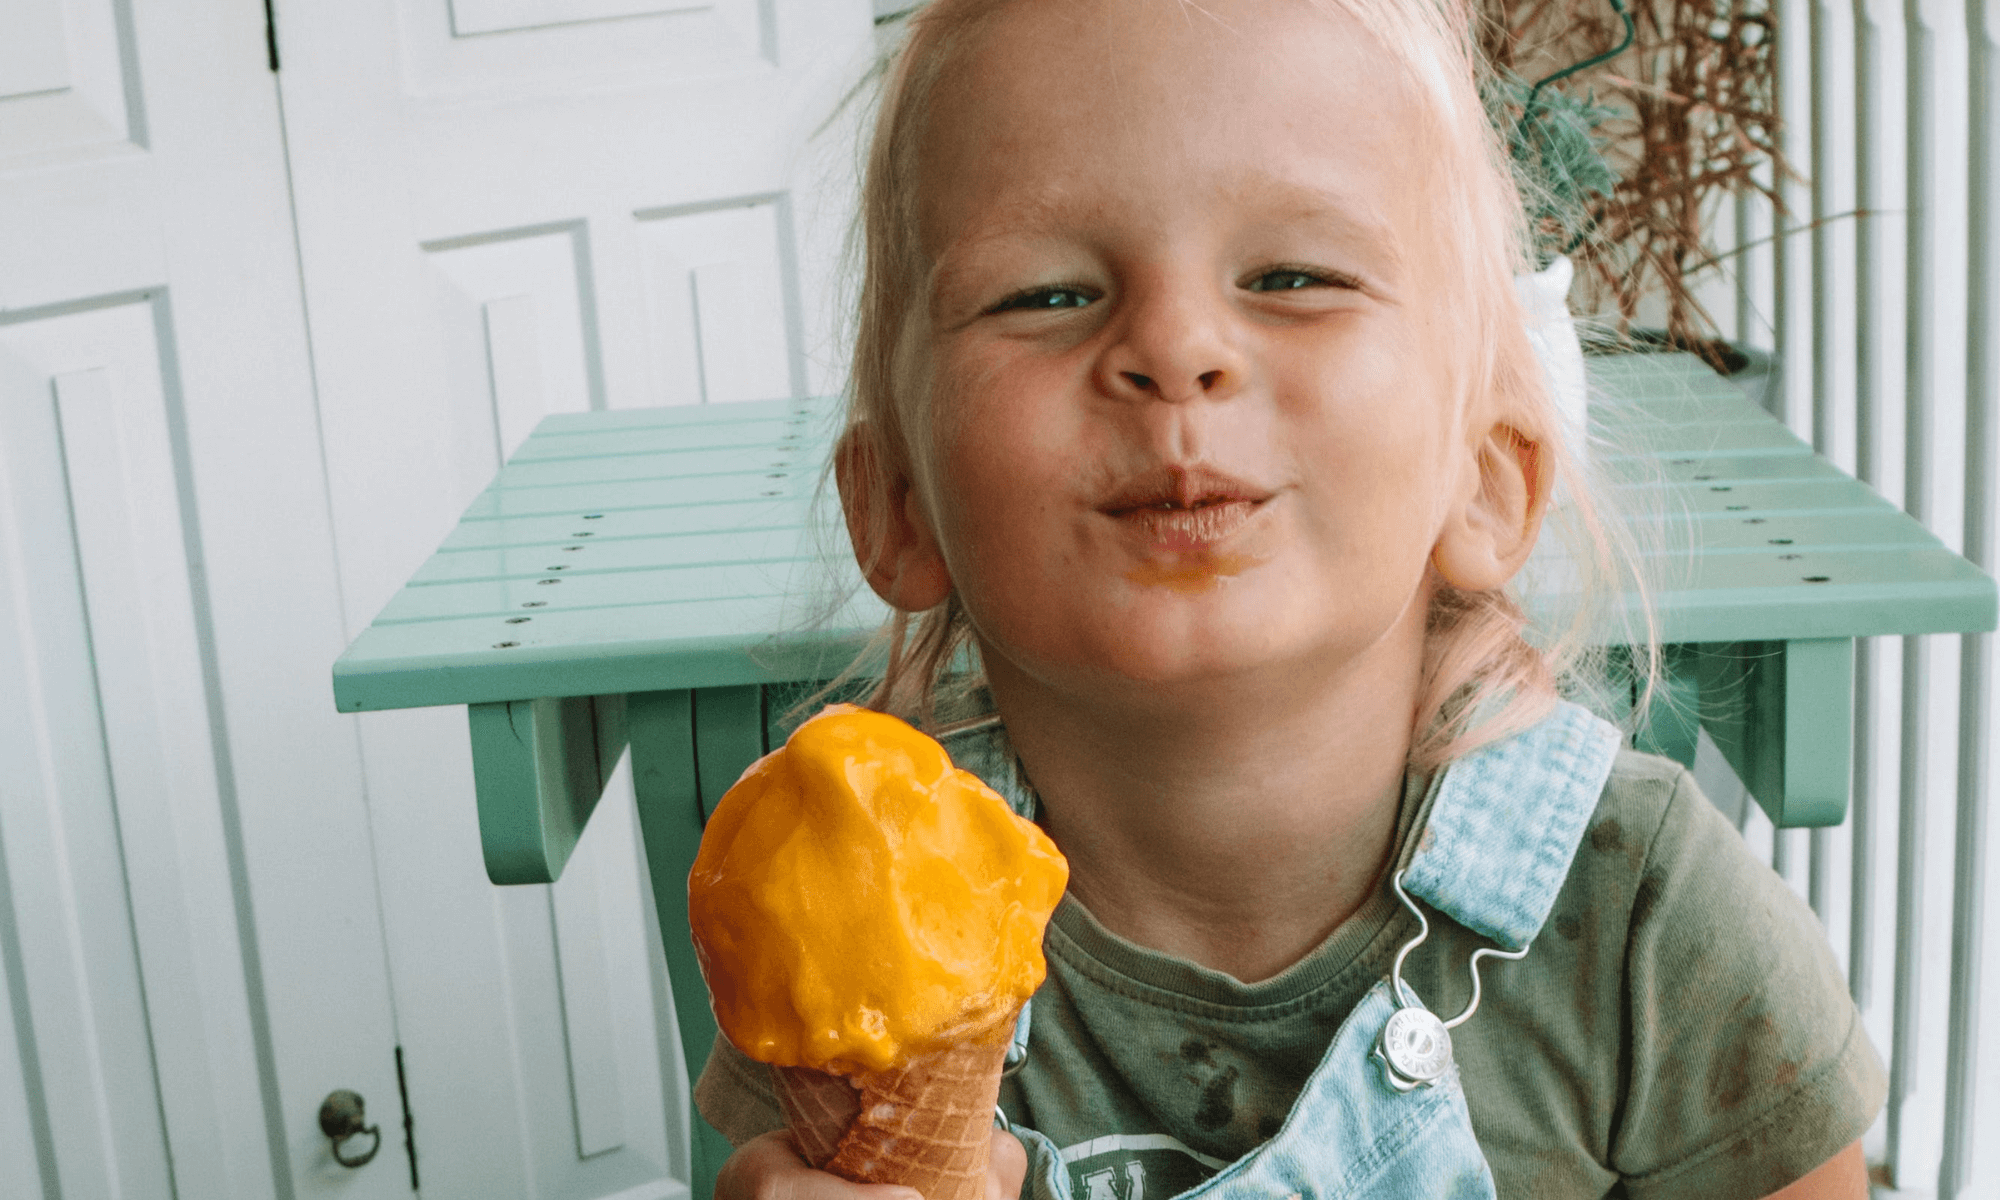 Lire la suite à propos de l’article Pourquoi mon enfant refuse de manger ?